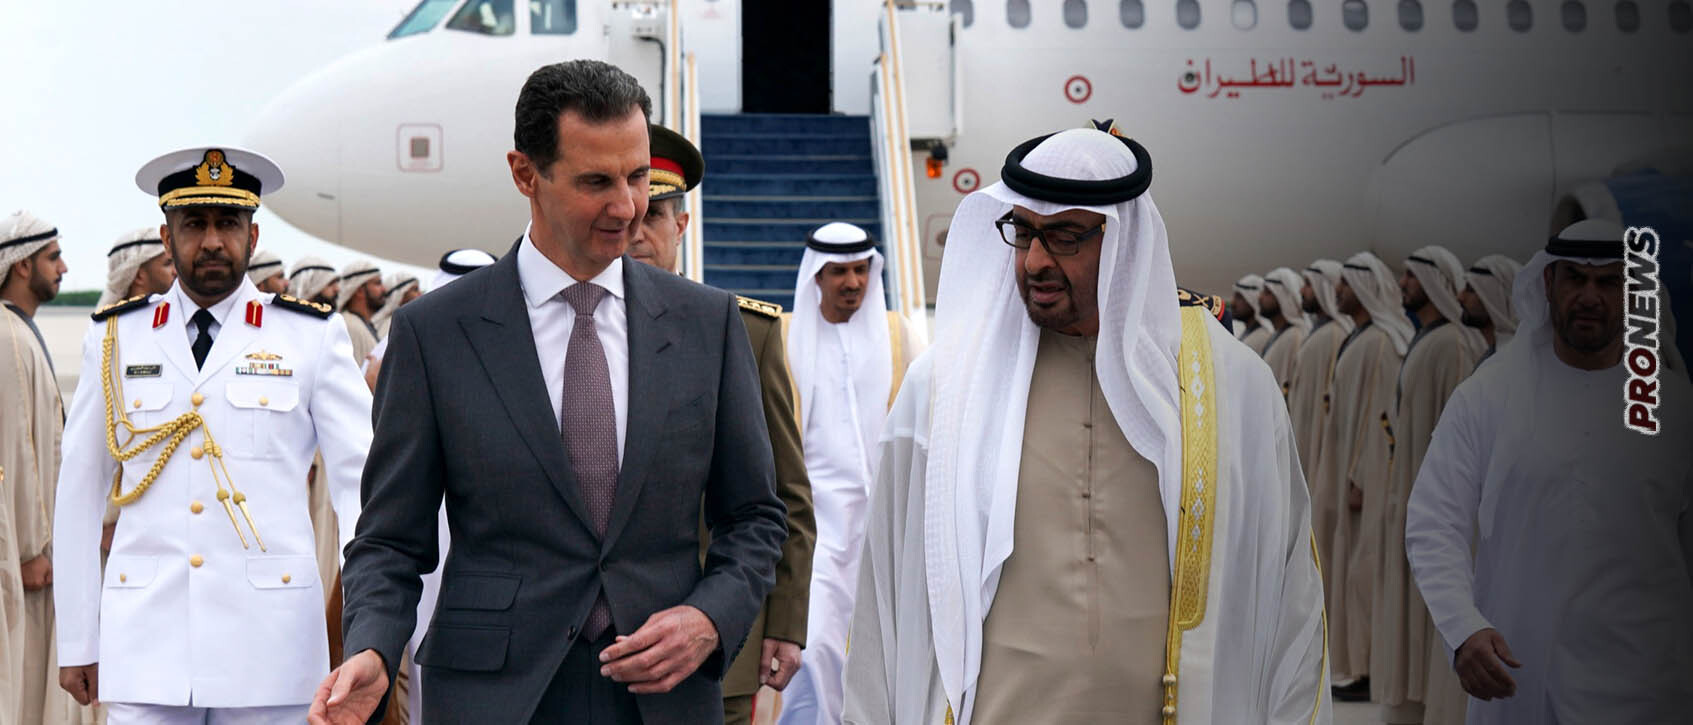 Αλλάζουν όλα σε Ανατολική Μεσόγειο και Μέση Ανατολή μετά την σύμπλευση Ιράν-Σ.Αραβίας – Τα ΗΑΕ «αγκάλιασαν» την Συρία και τον Μ.Άσαντ